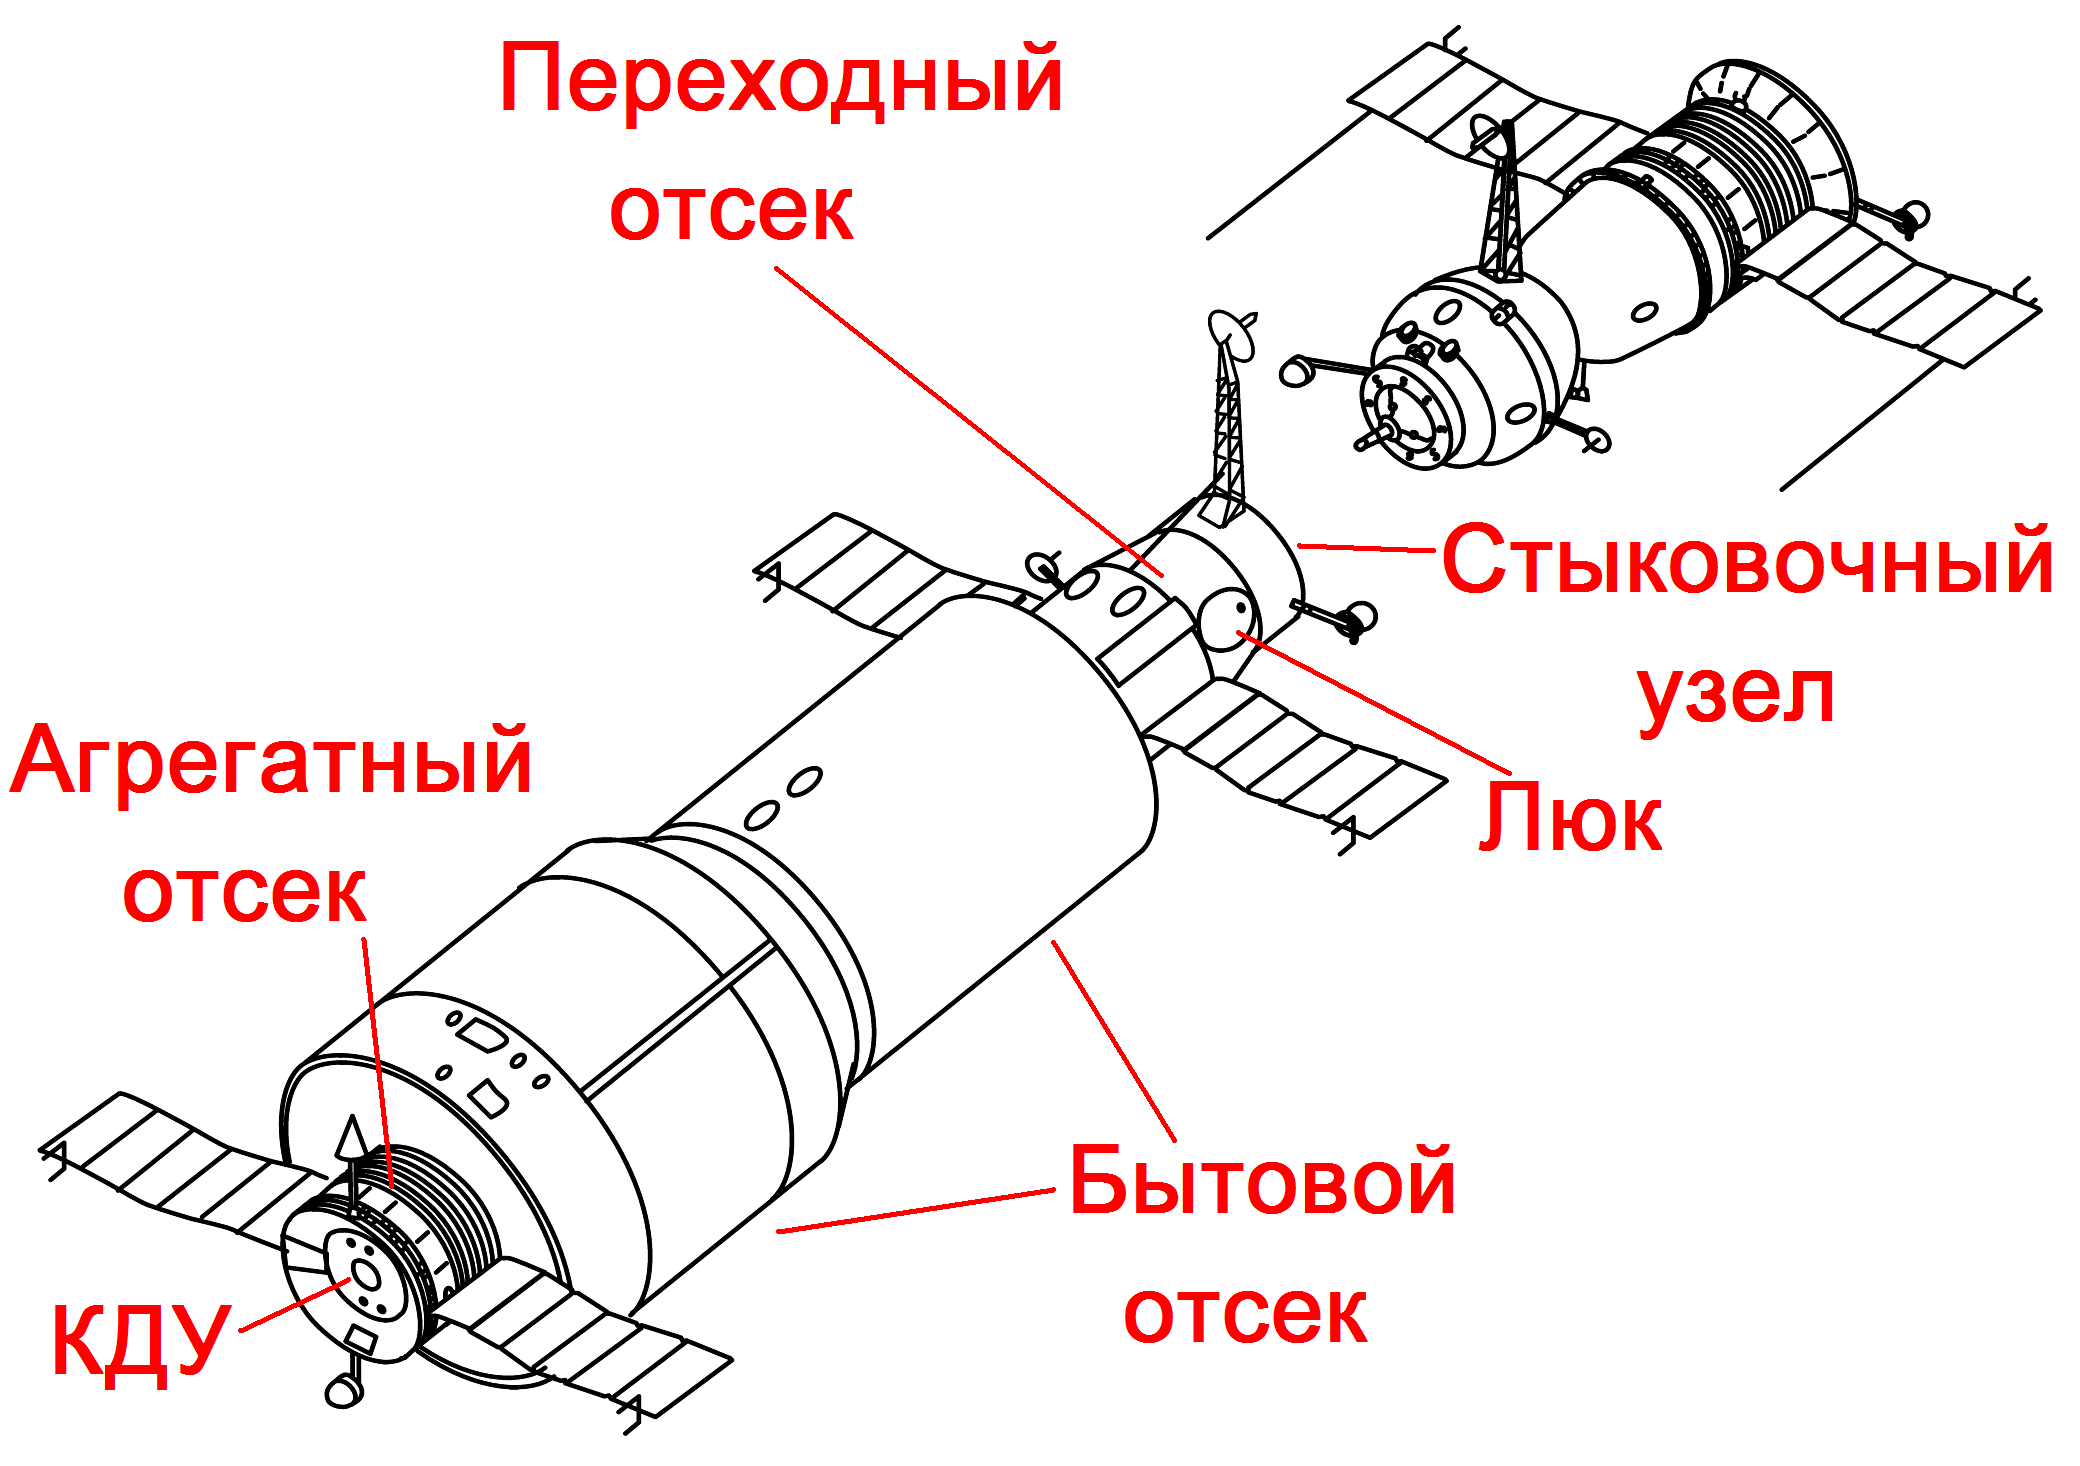 Схема присоединения орбитальной станции к космическому кораблю